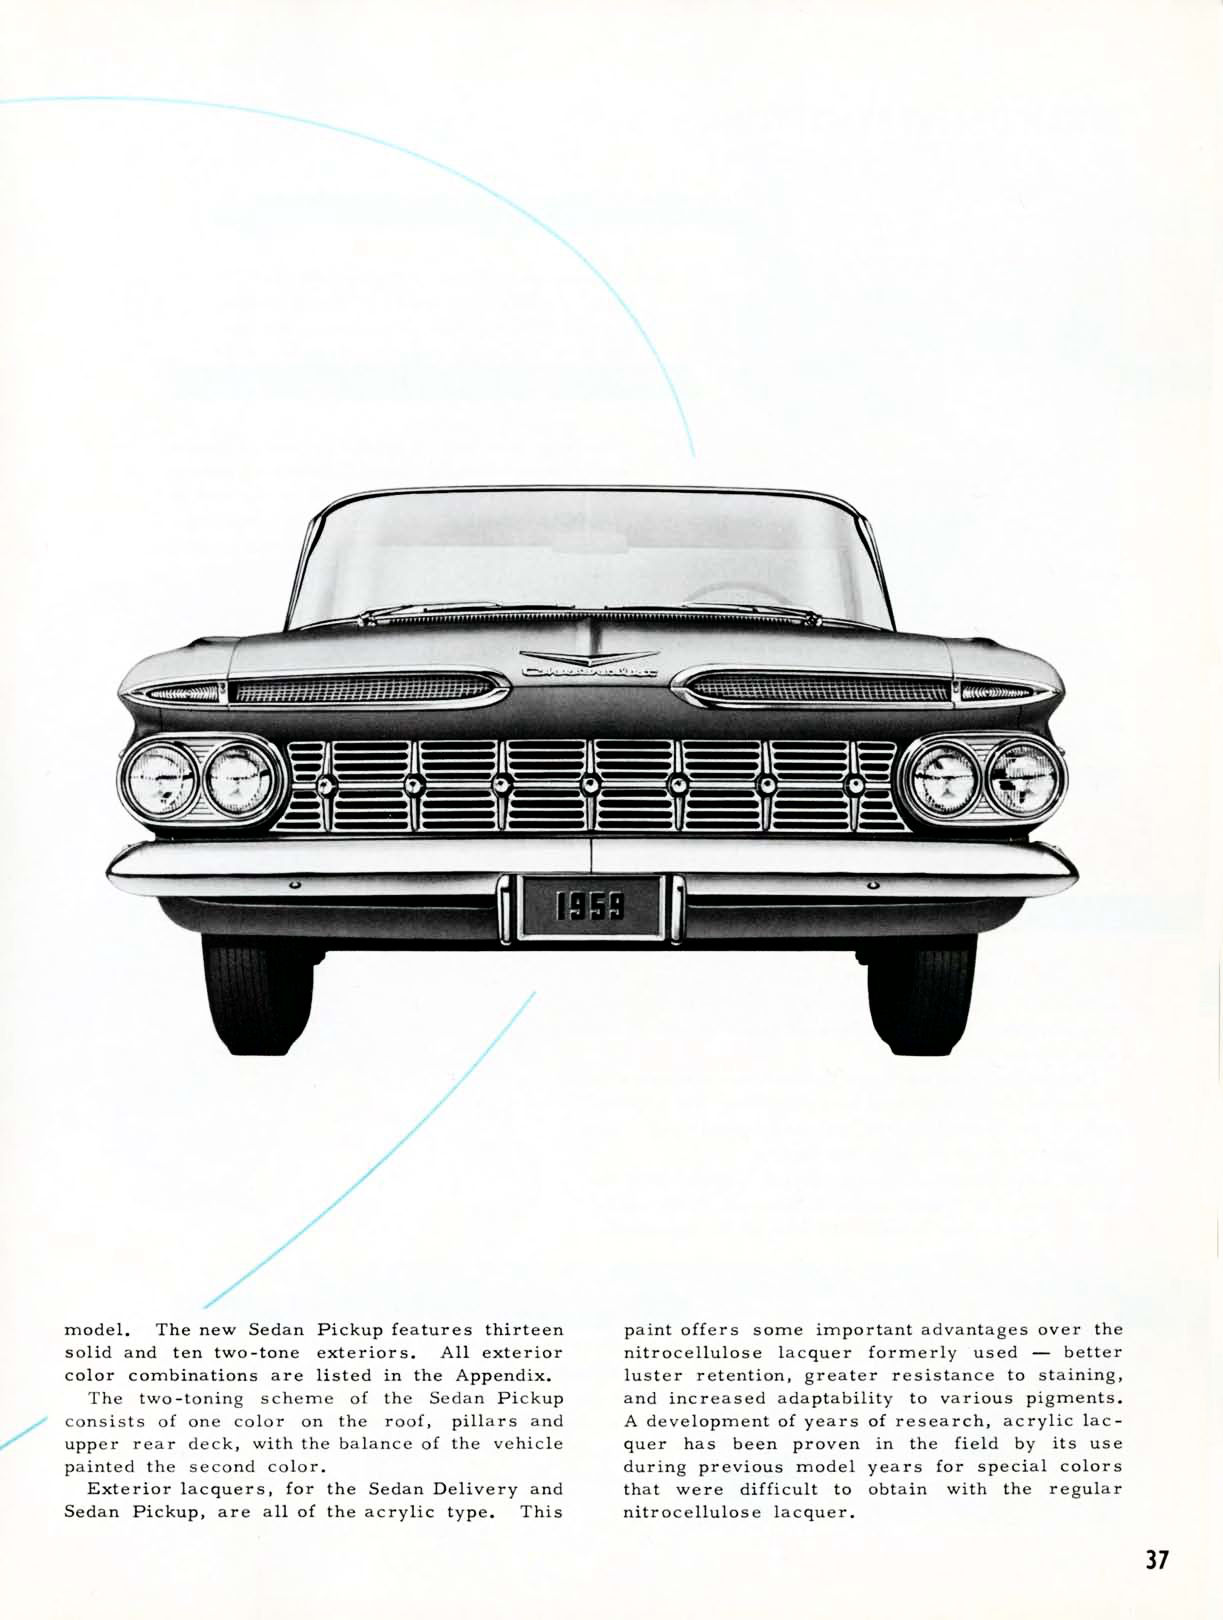 1959 Chevrolet Truck Engineering Features-37